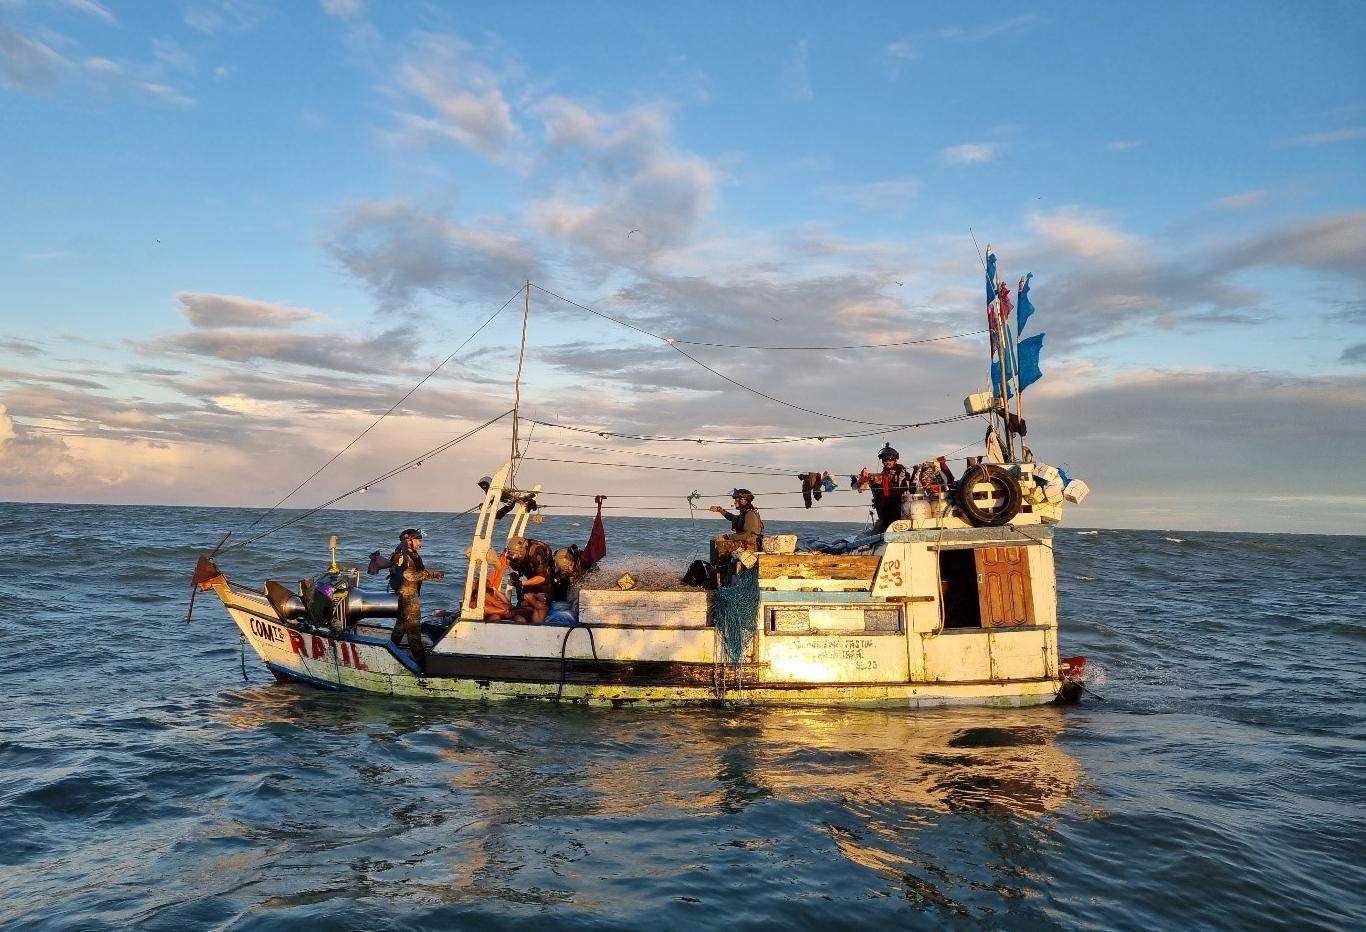  Les forces armées en Guyane engagées dans la lutte contre la pêche illégale